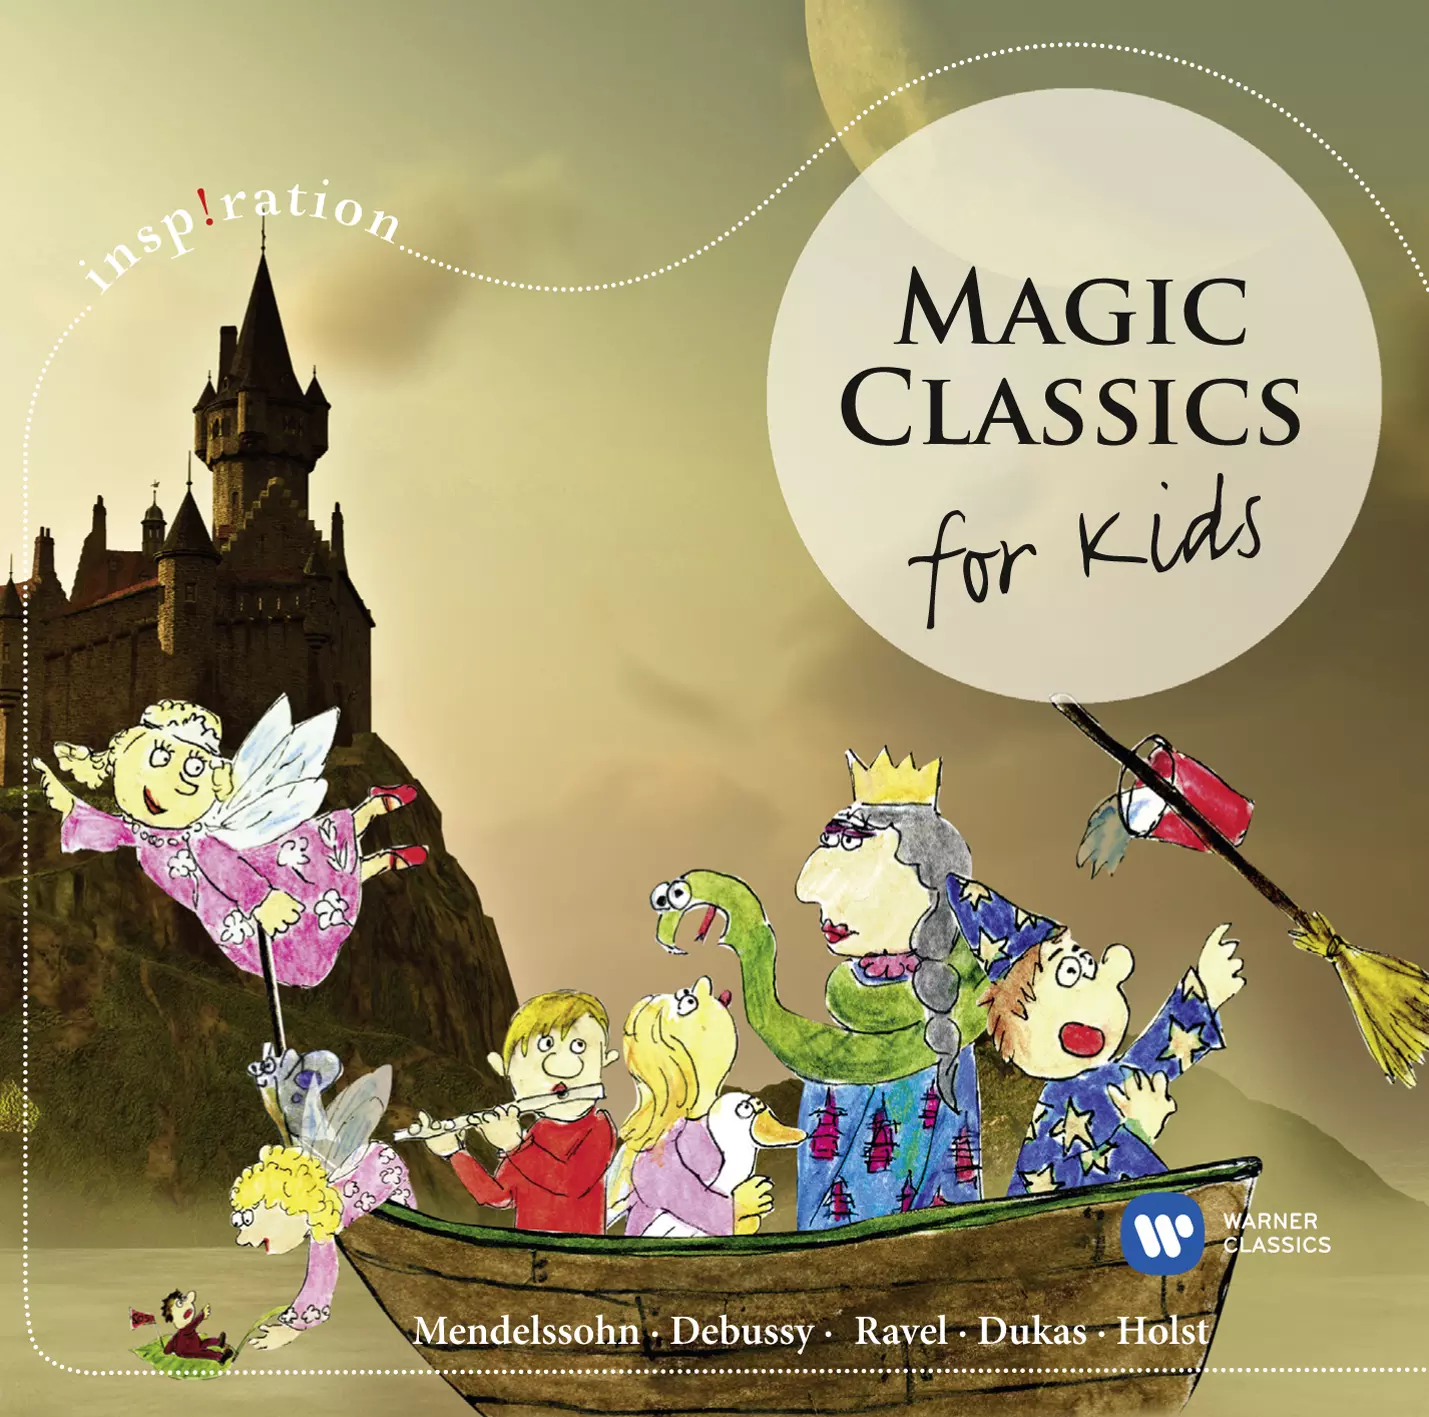 Magic Classics - For Kids